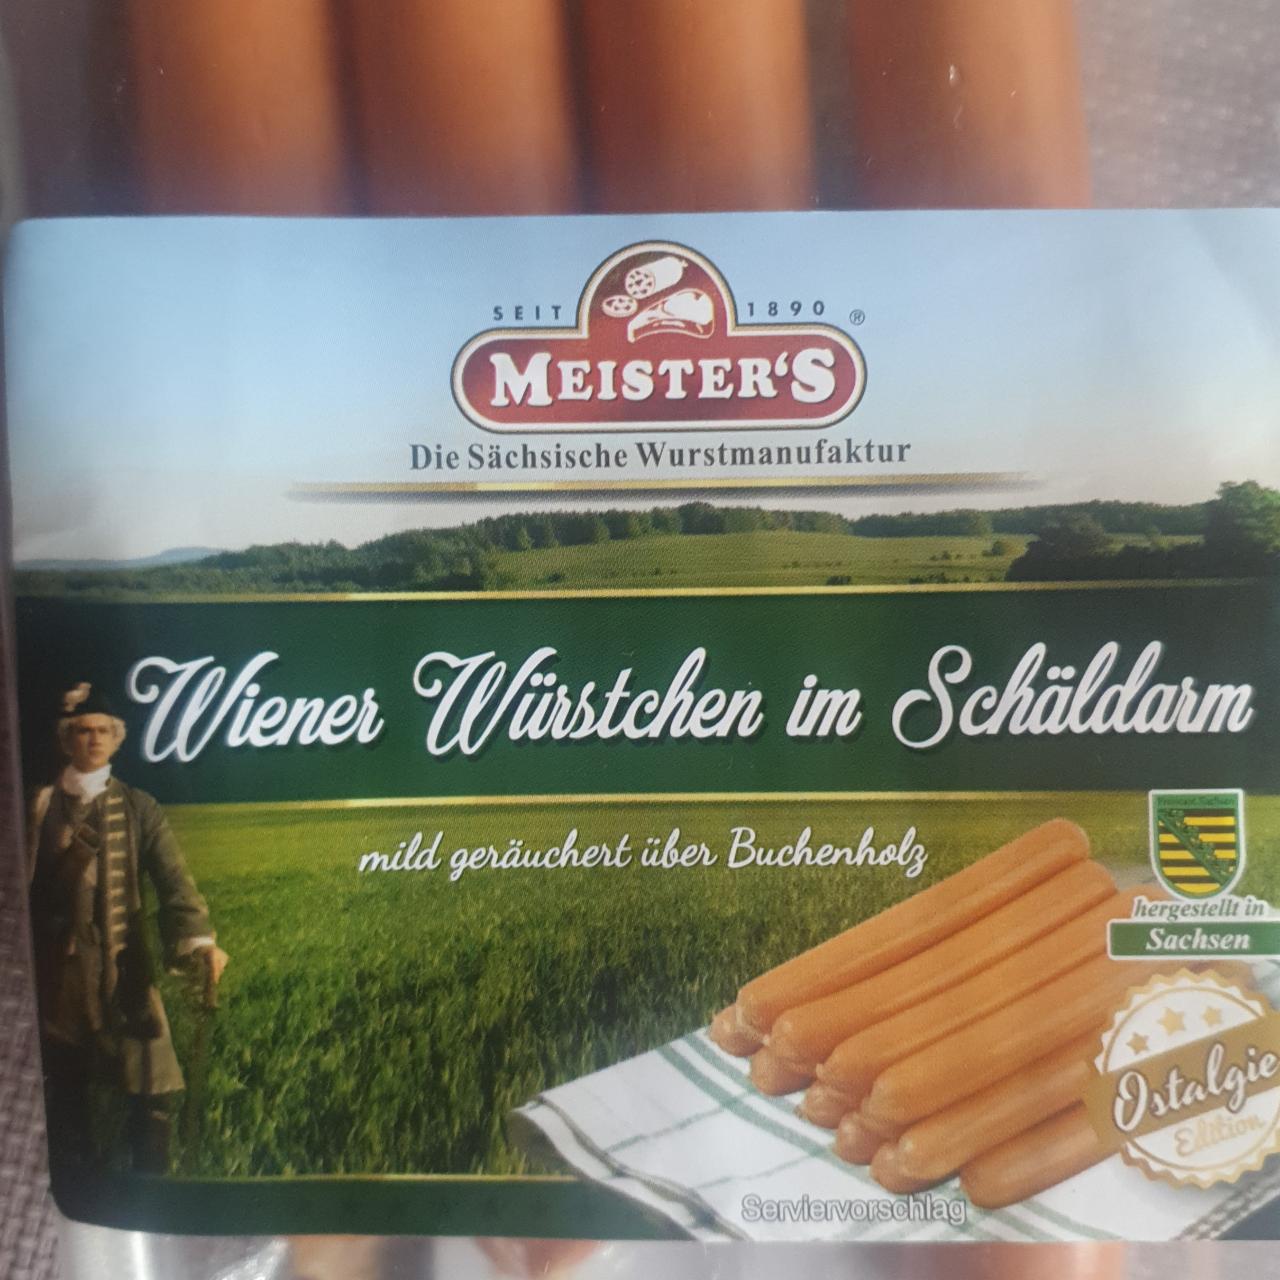 Fotografie - Wiener Würstchen im Schäldarm Meister's